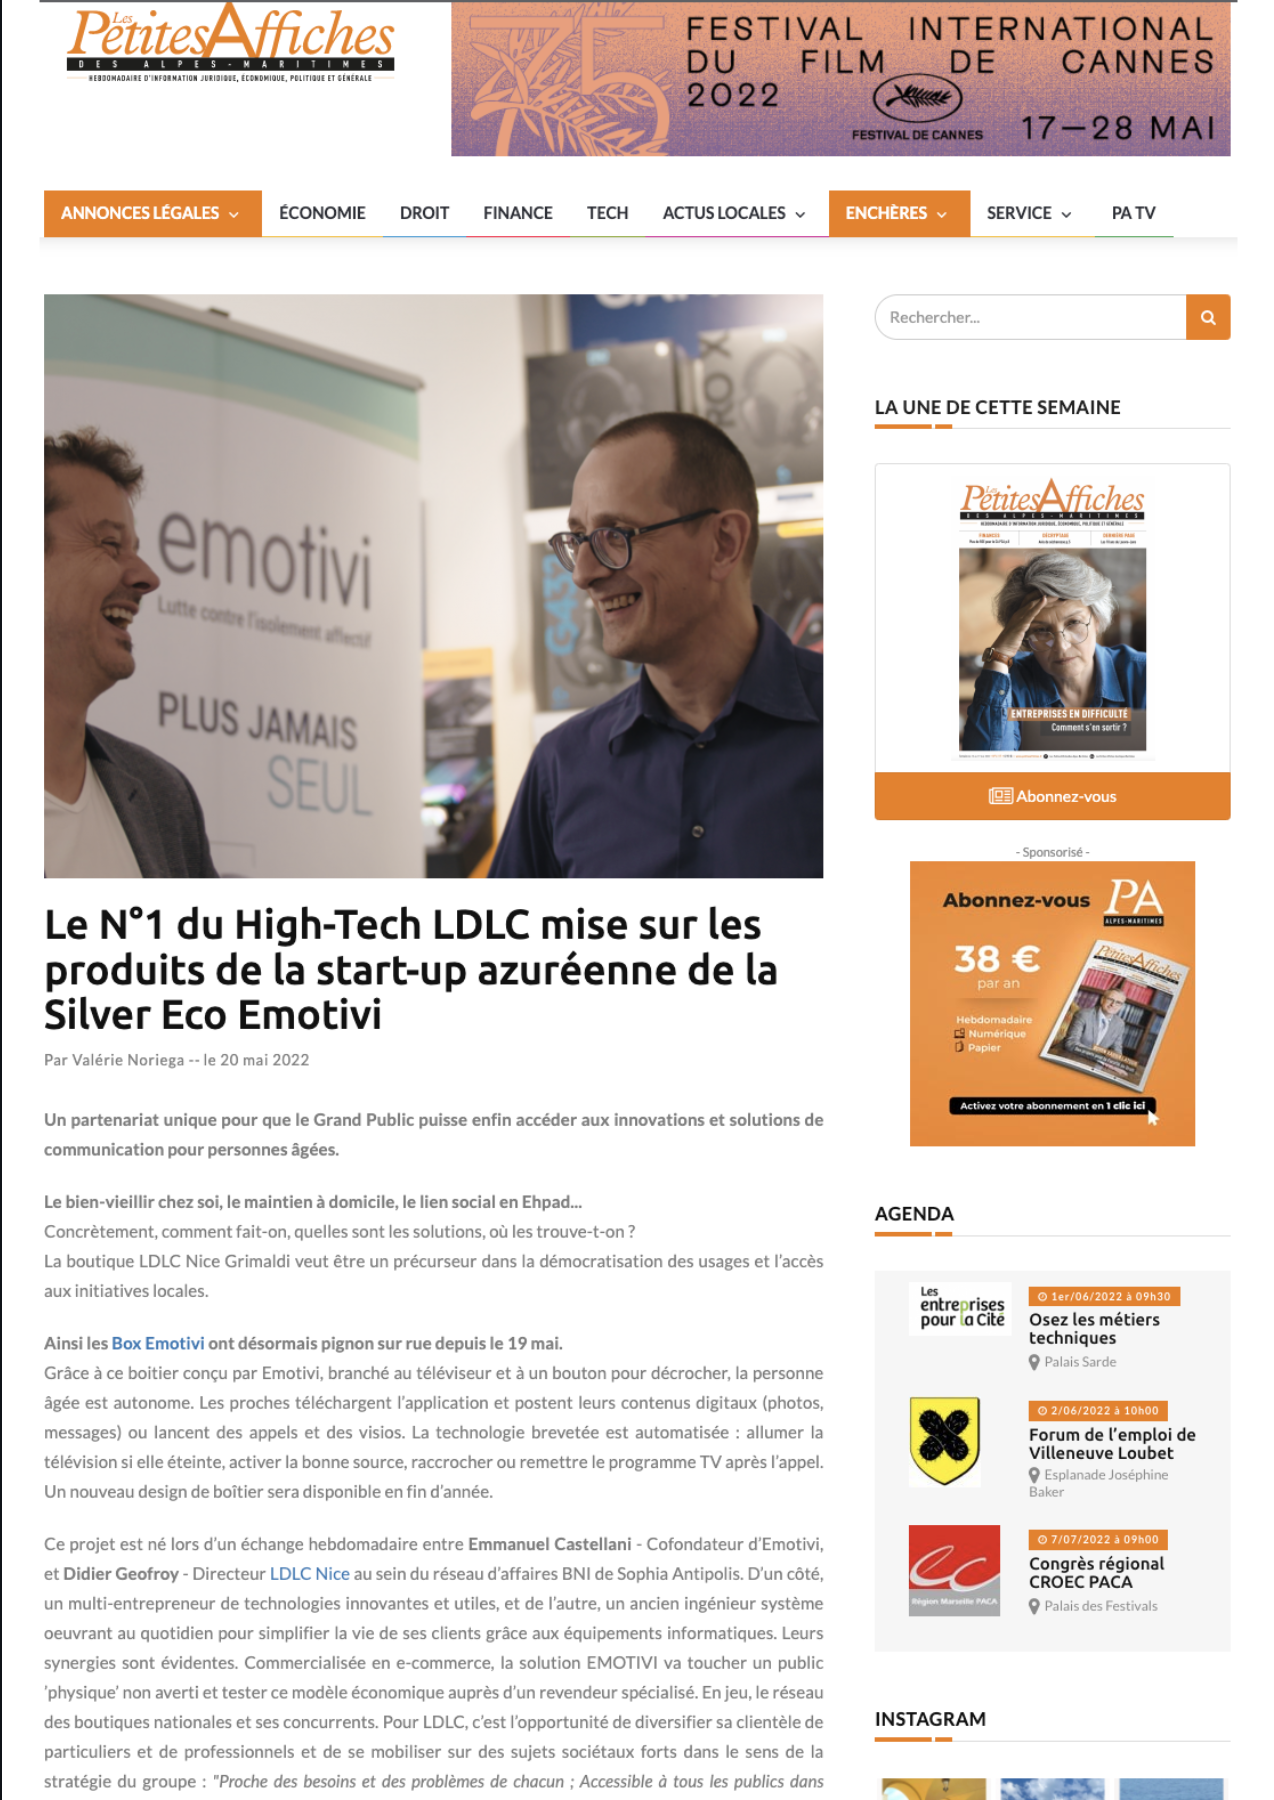 Le N°1 du High-Tech LDLC mise sur les produits de la start-up azuréenne de la Silver Eco Emotivi